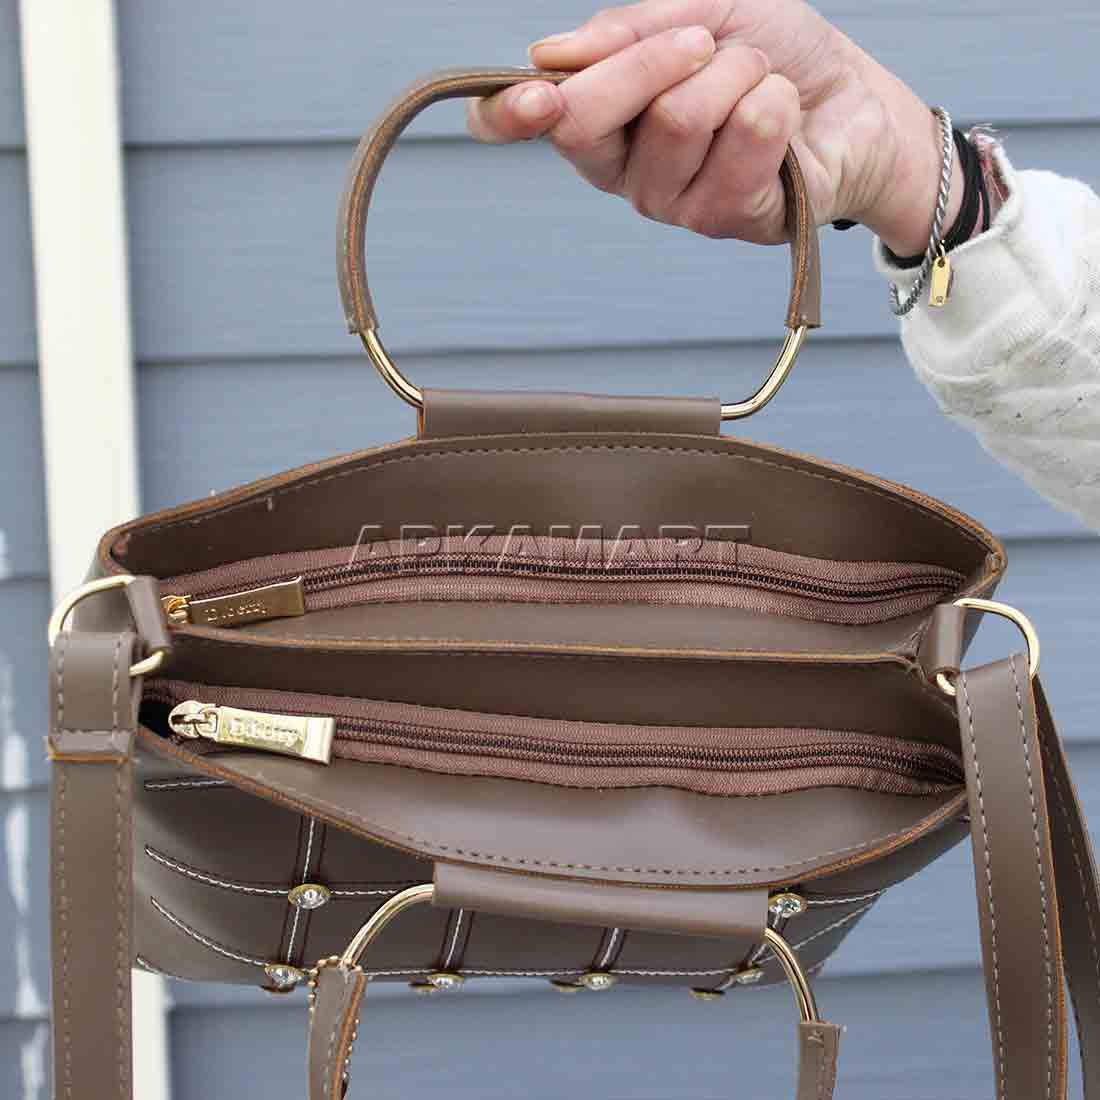 Women Clutch Purse Classic Design | Fancy Purse For Daily Use - Shireen  Women's Handbags